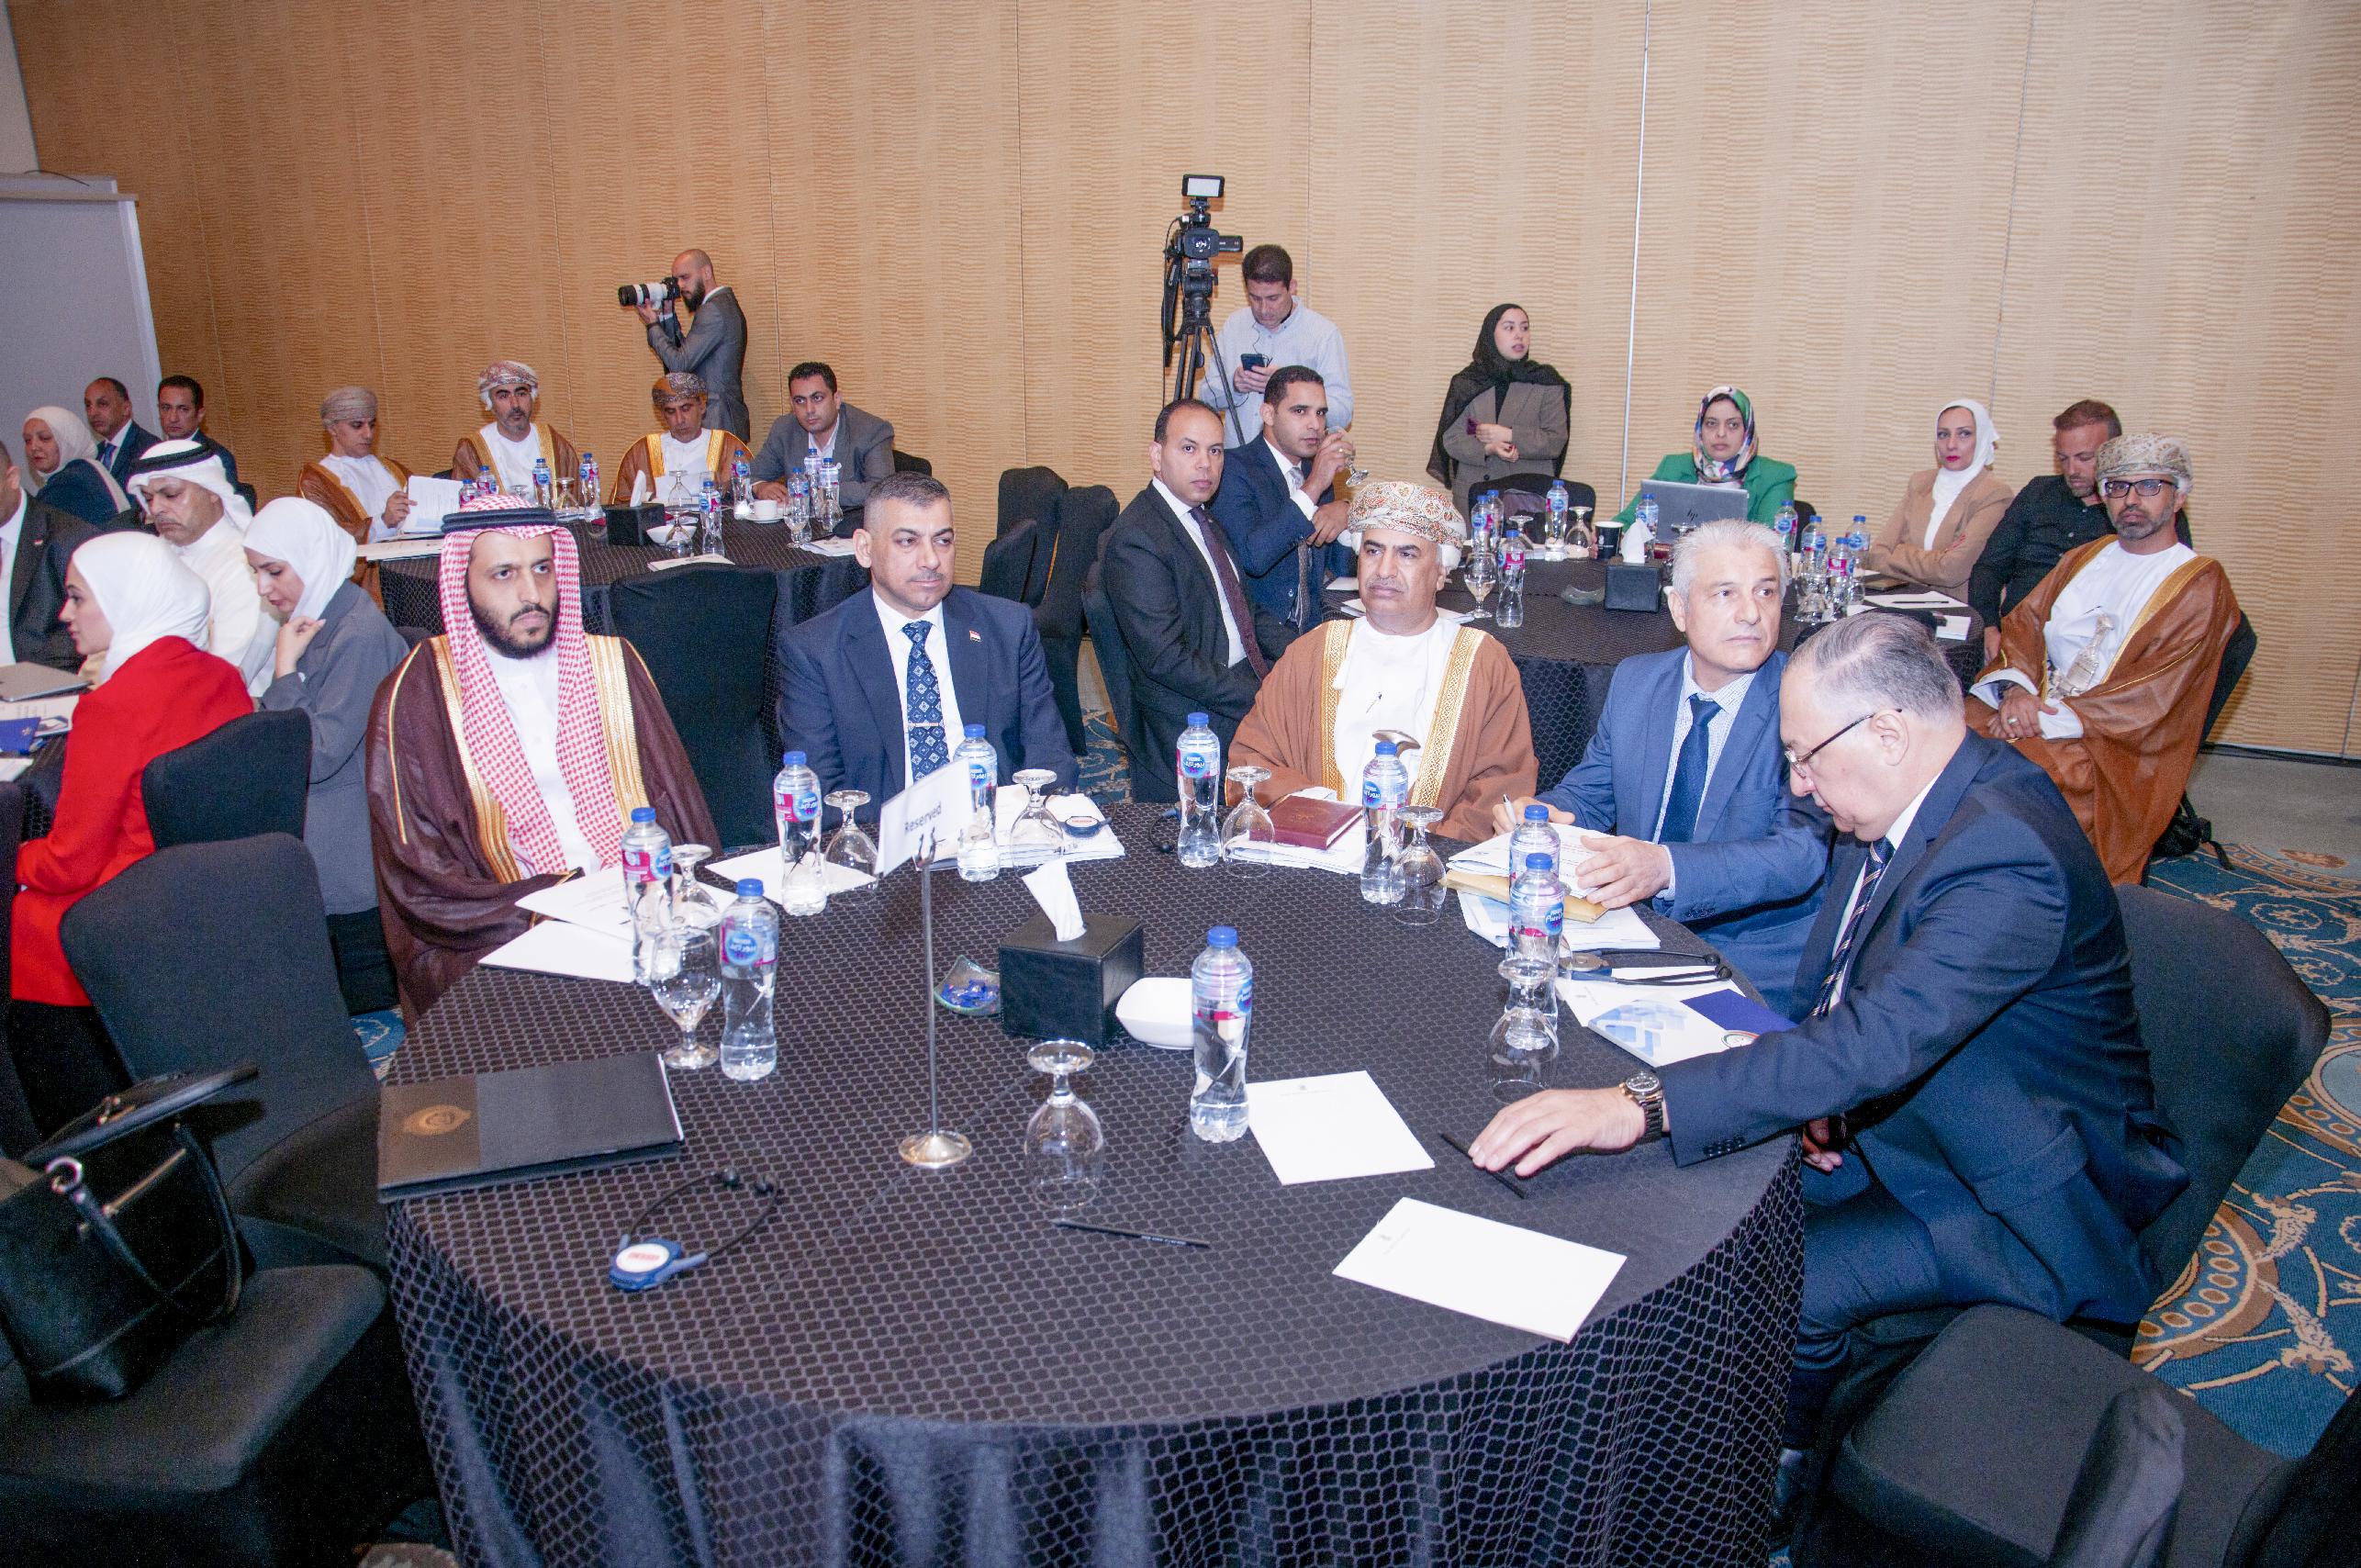 سلطنة عمان تشارك في المنتدى العربي بعنوان تعزيز جهود مكافحة الفساد (واقع وتحديات)